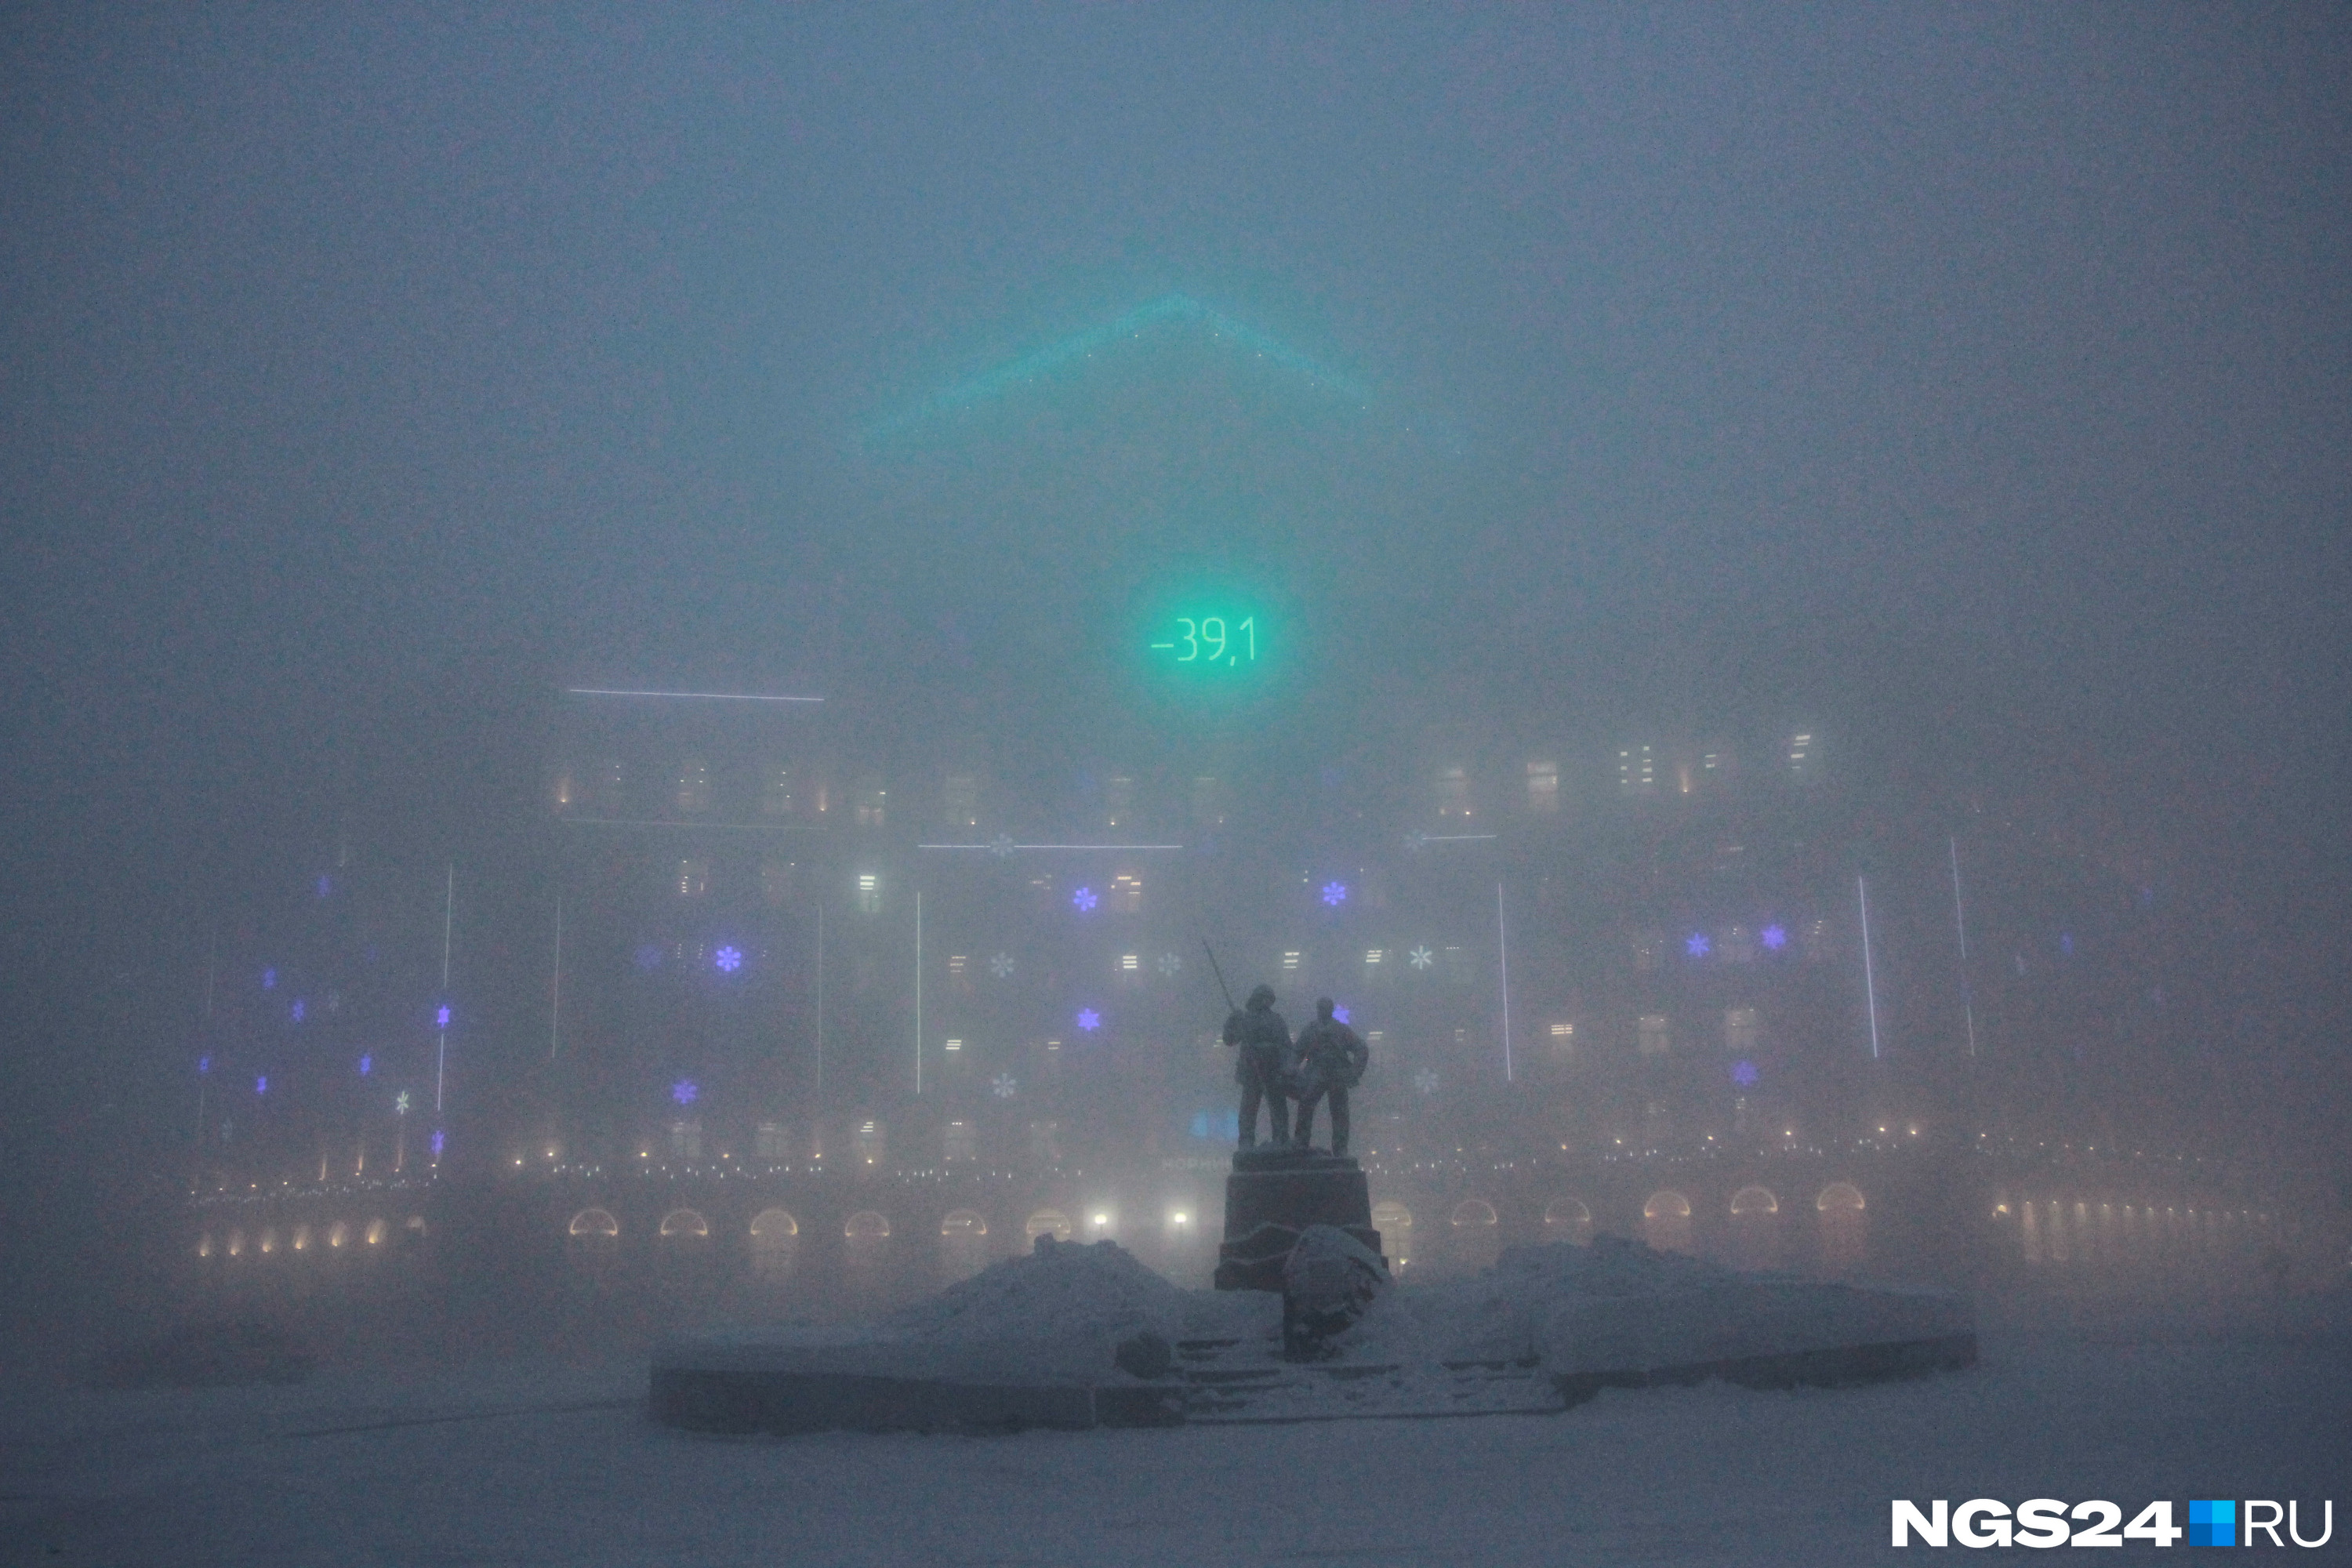 Памятник «Металлургам Норильска» и здания на Гвардейской площади скрыты за густым туманом